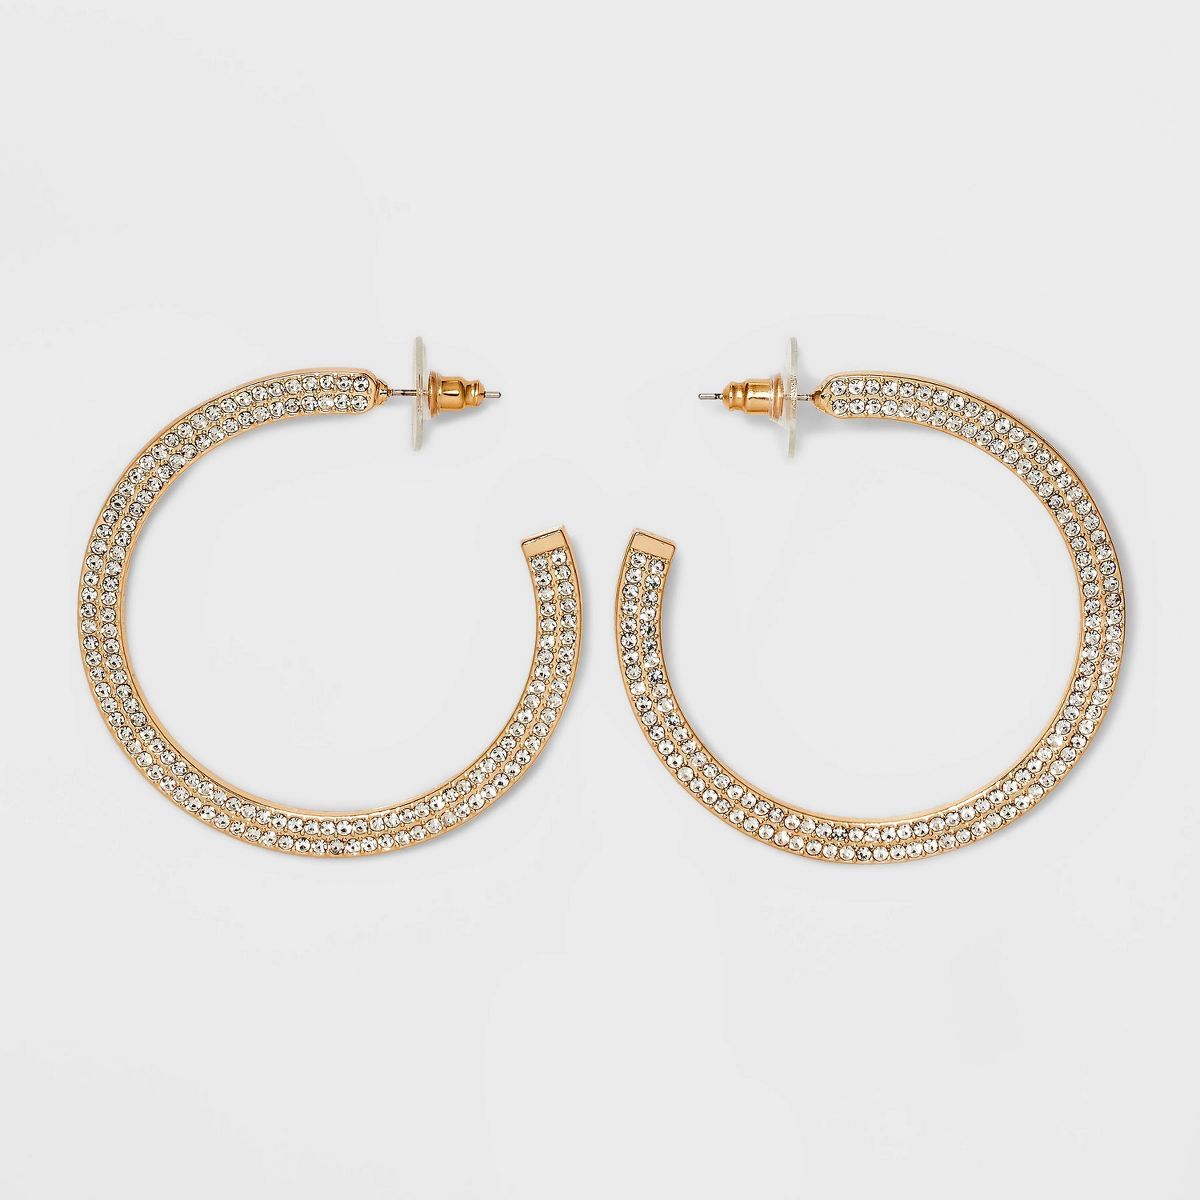 SUGARFIX by BaubleBar Crystal Statement Hoop Earrings - Gold | Target